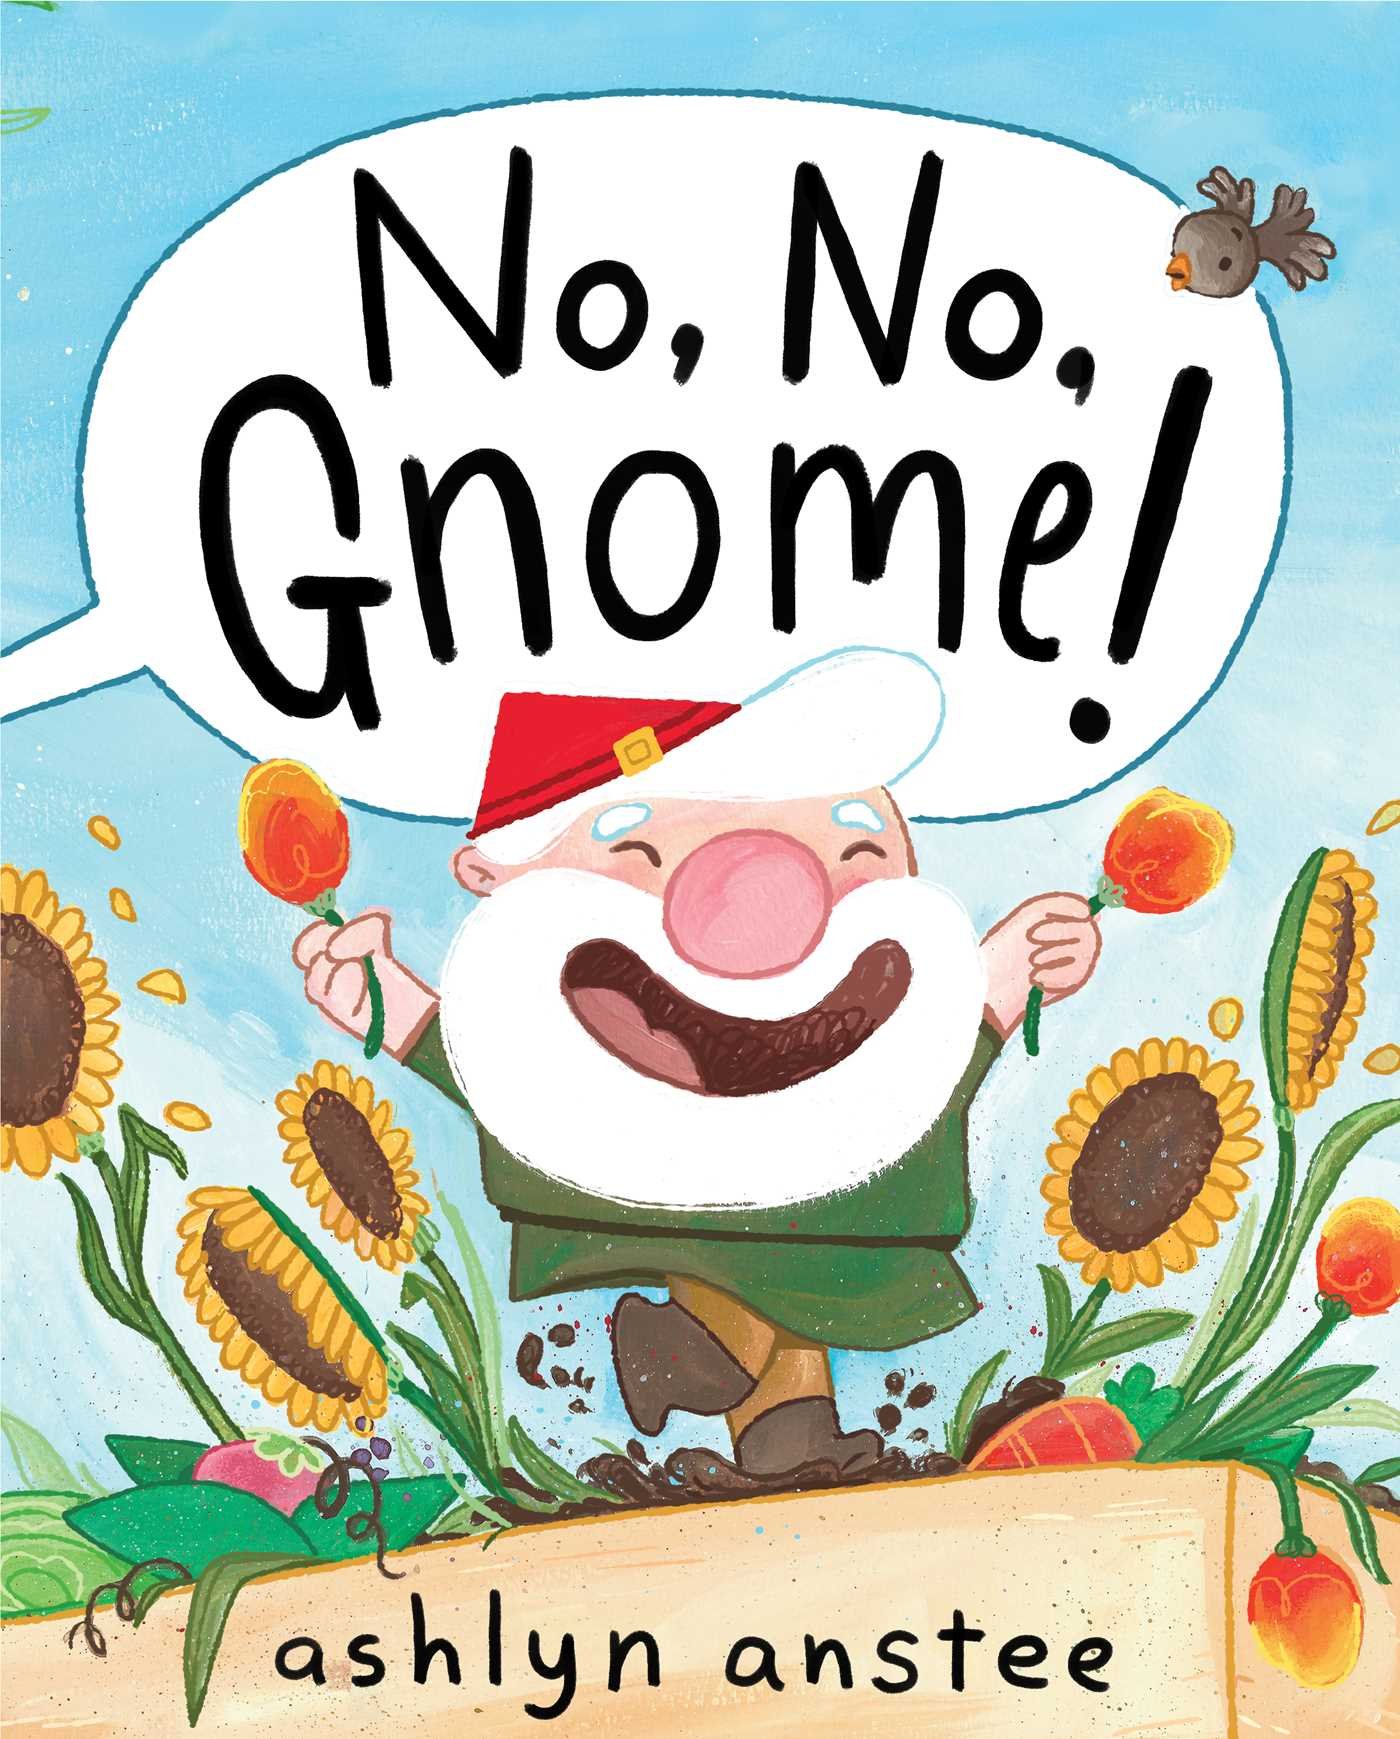 Image for "No, No, Gnome!"